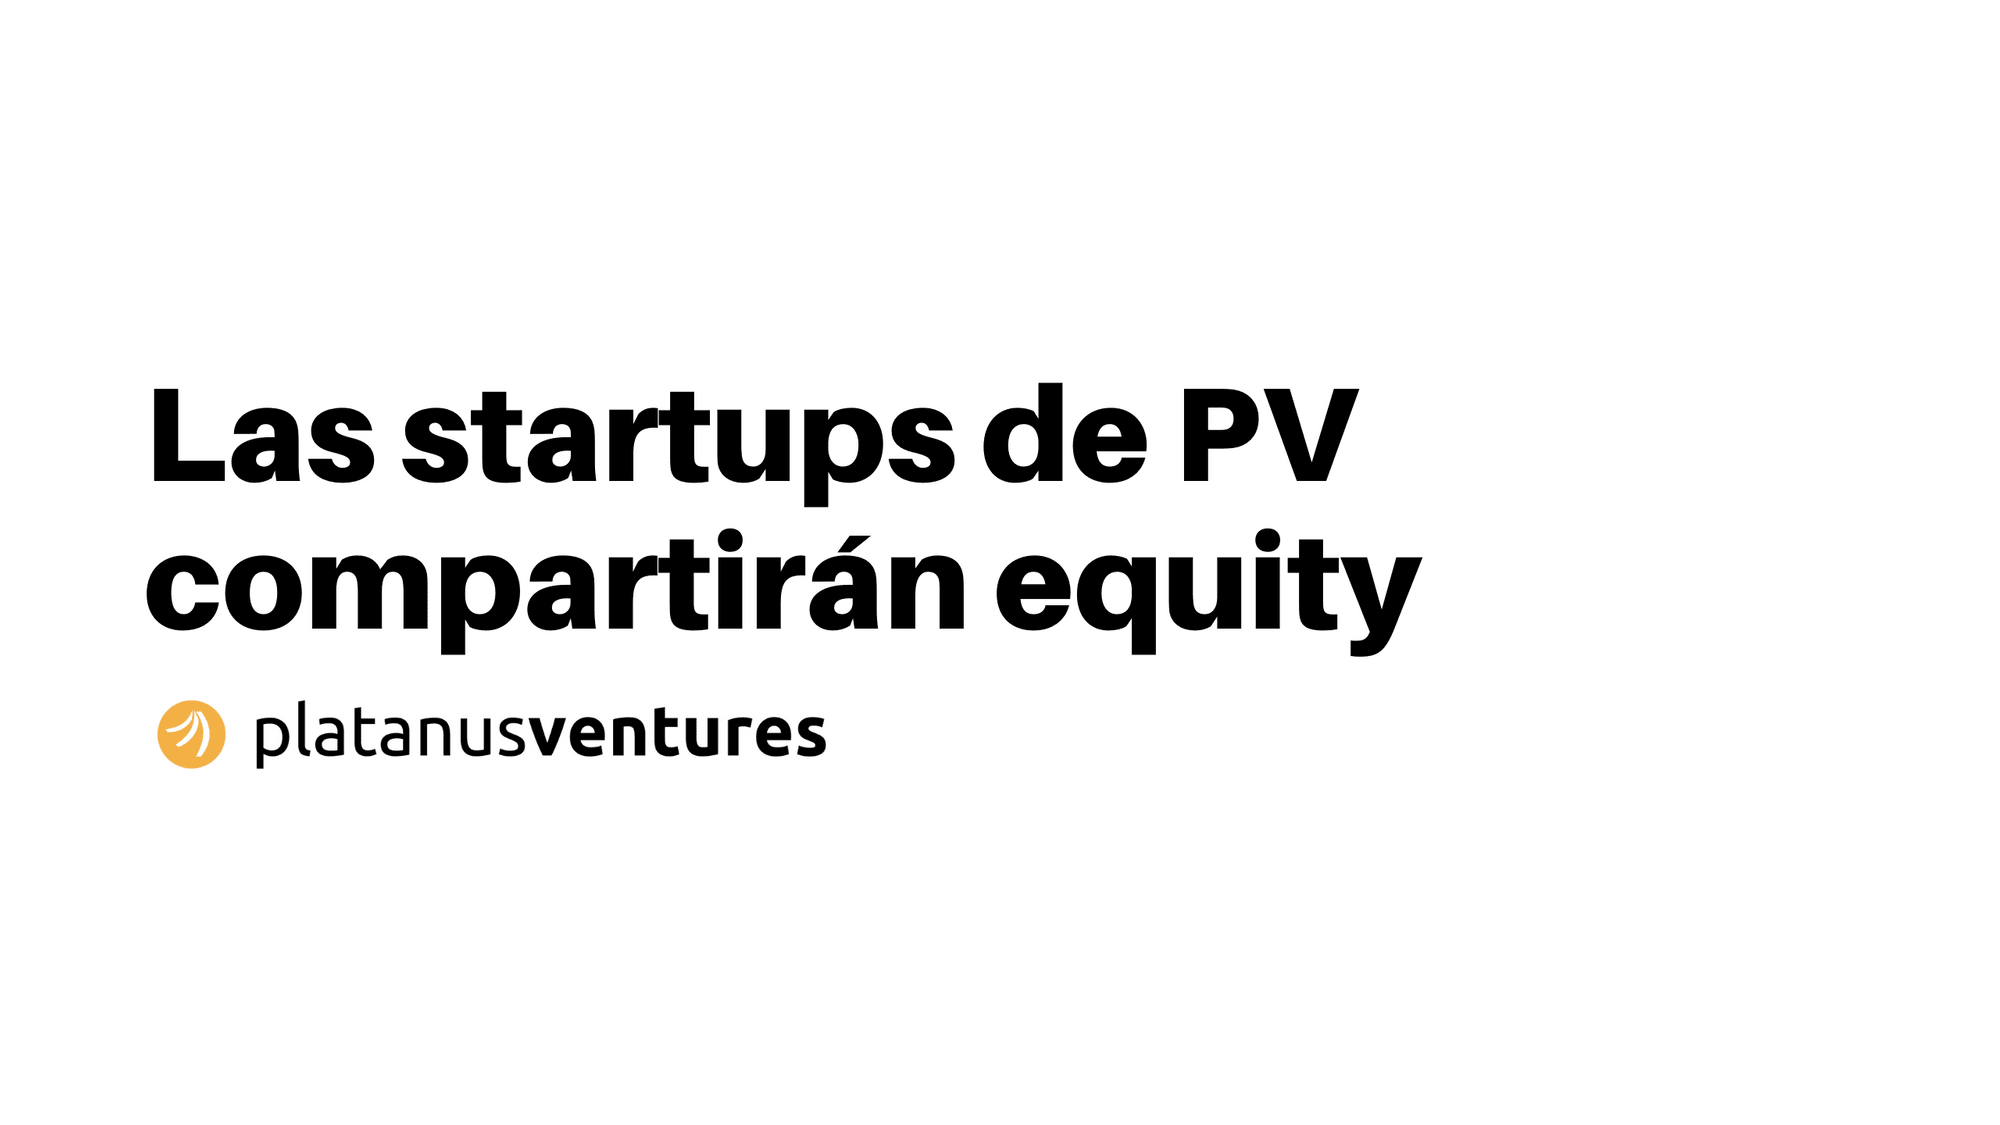 Las startups de PV compartirán equity